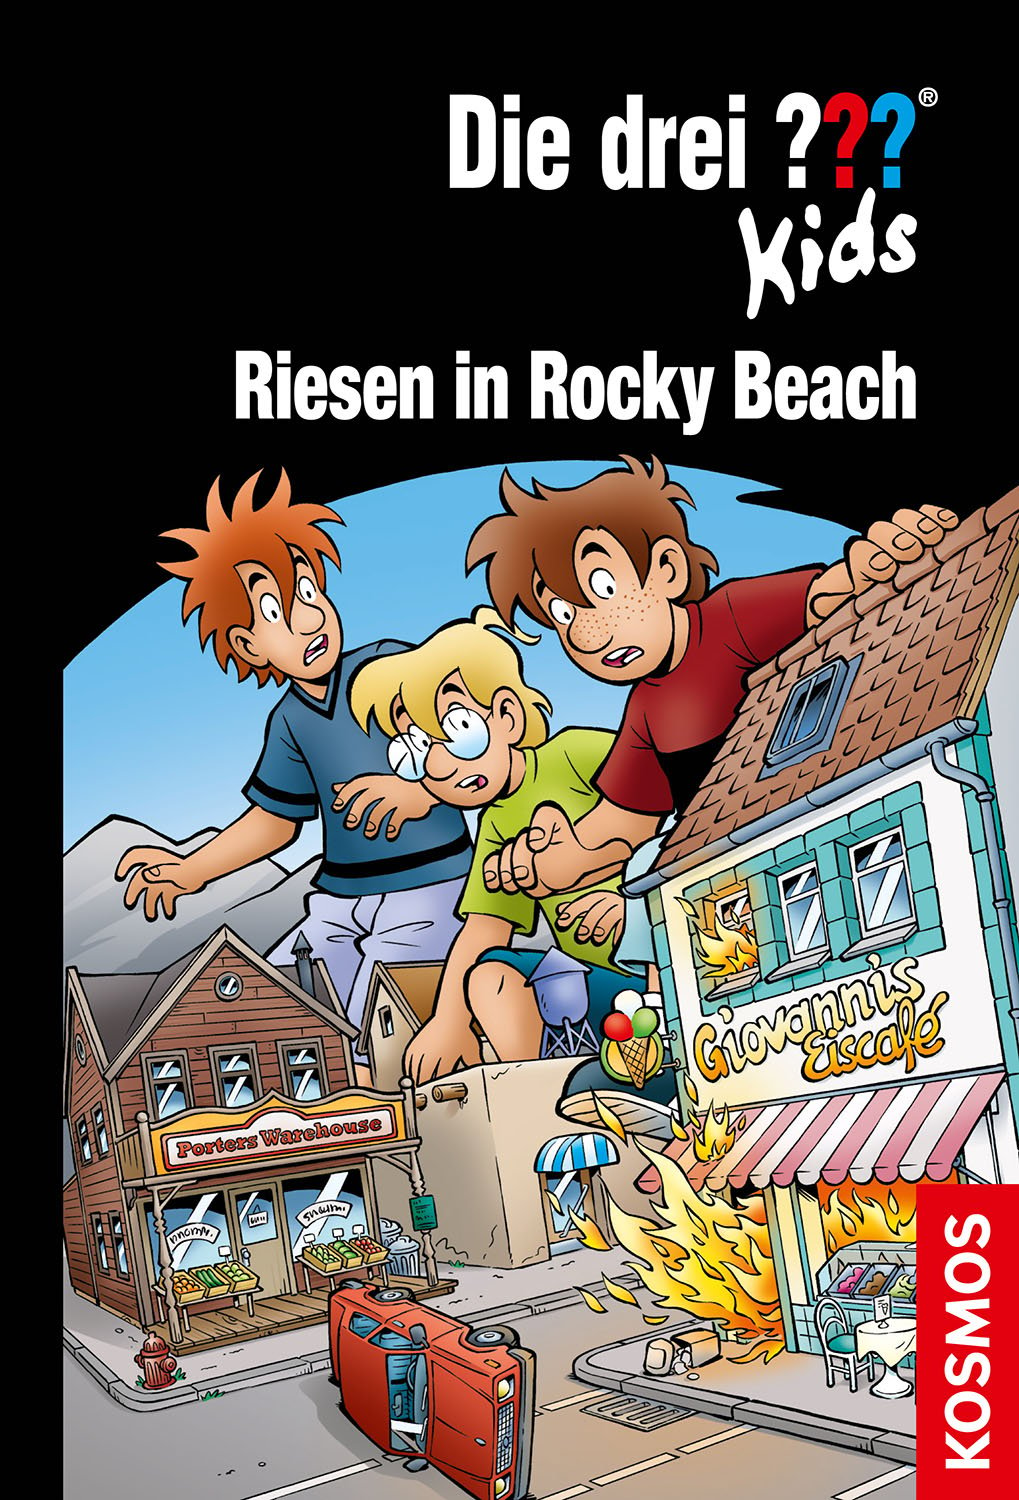 Die Drei ??? (Fragezeichen) Kids, Buch-Band 86: Riesen in Rocky Beach